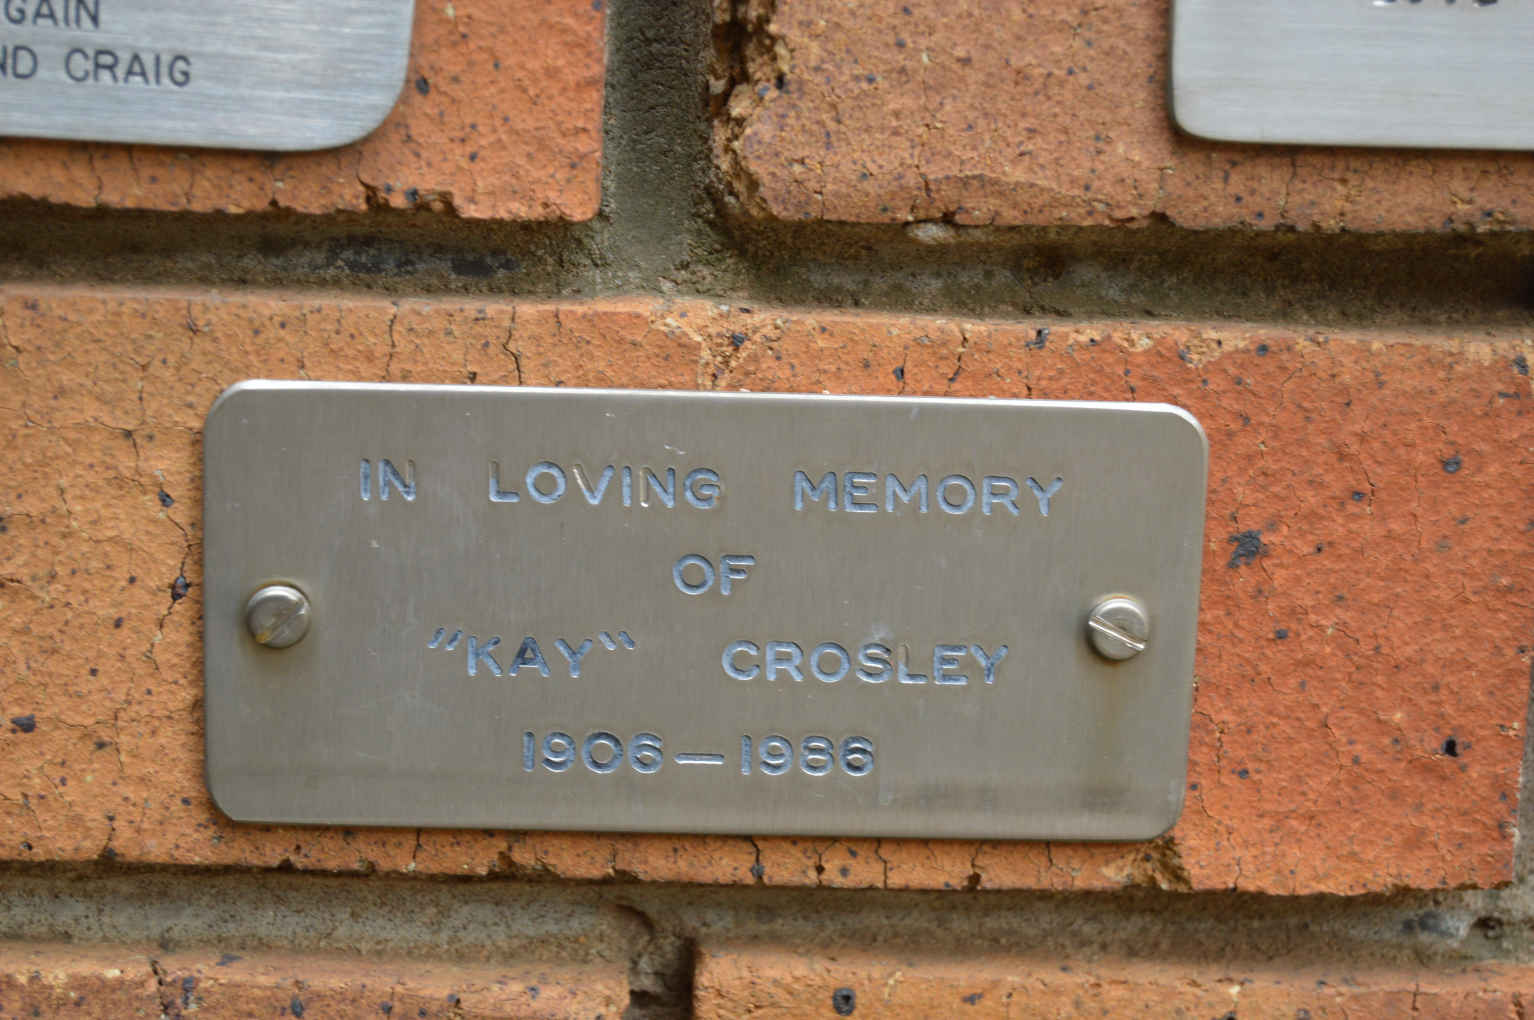 CROSLEY Kay 1906-1986